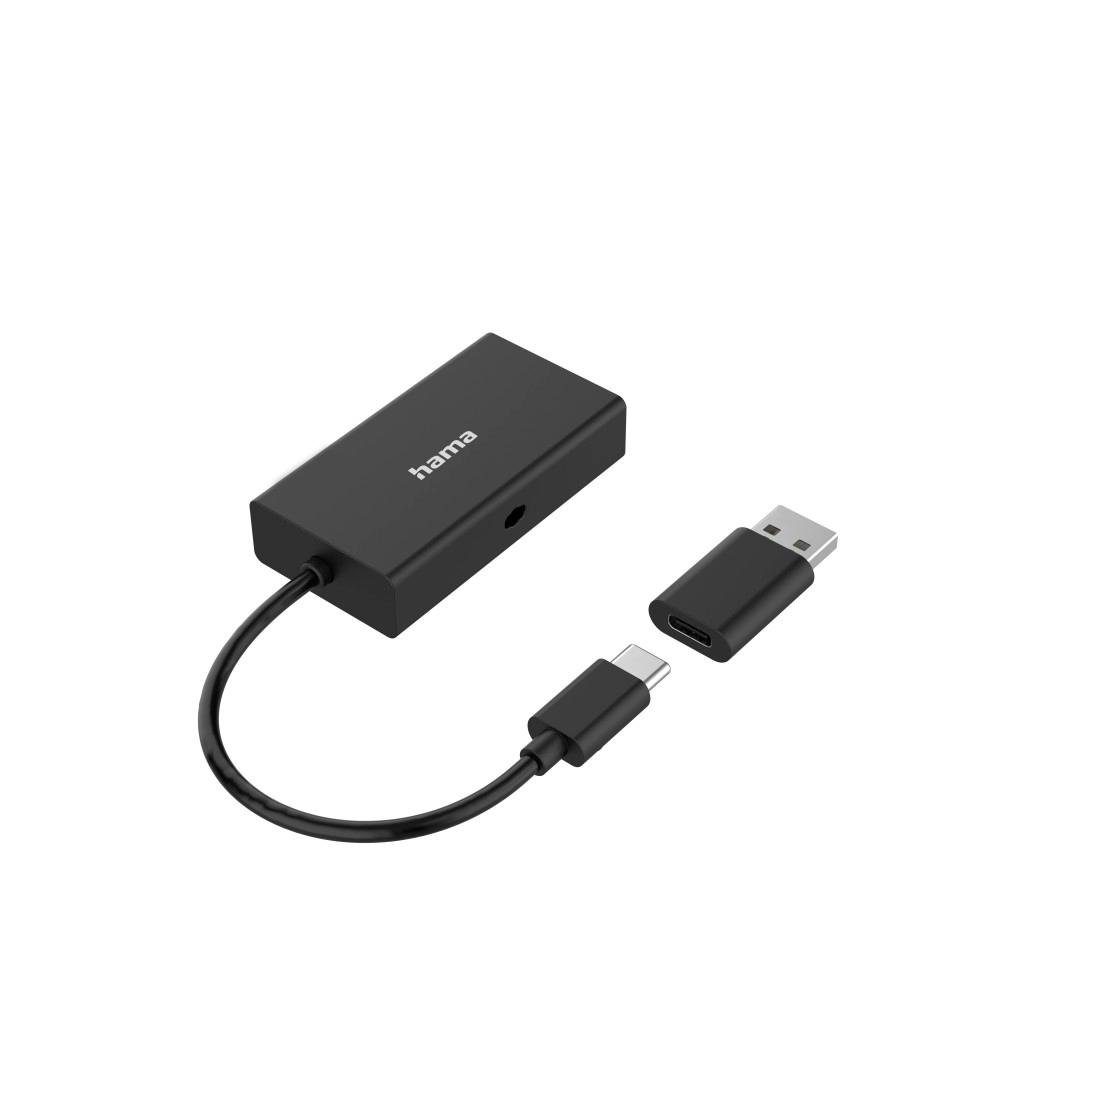 Hama USB OTG Hub Kartenleser 3 Ports USB A SD microSD inkl. USB A Adapter  USB-Adapter USB Micro-B, USB Typ A